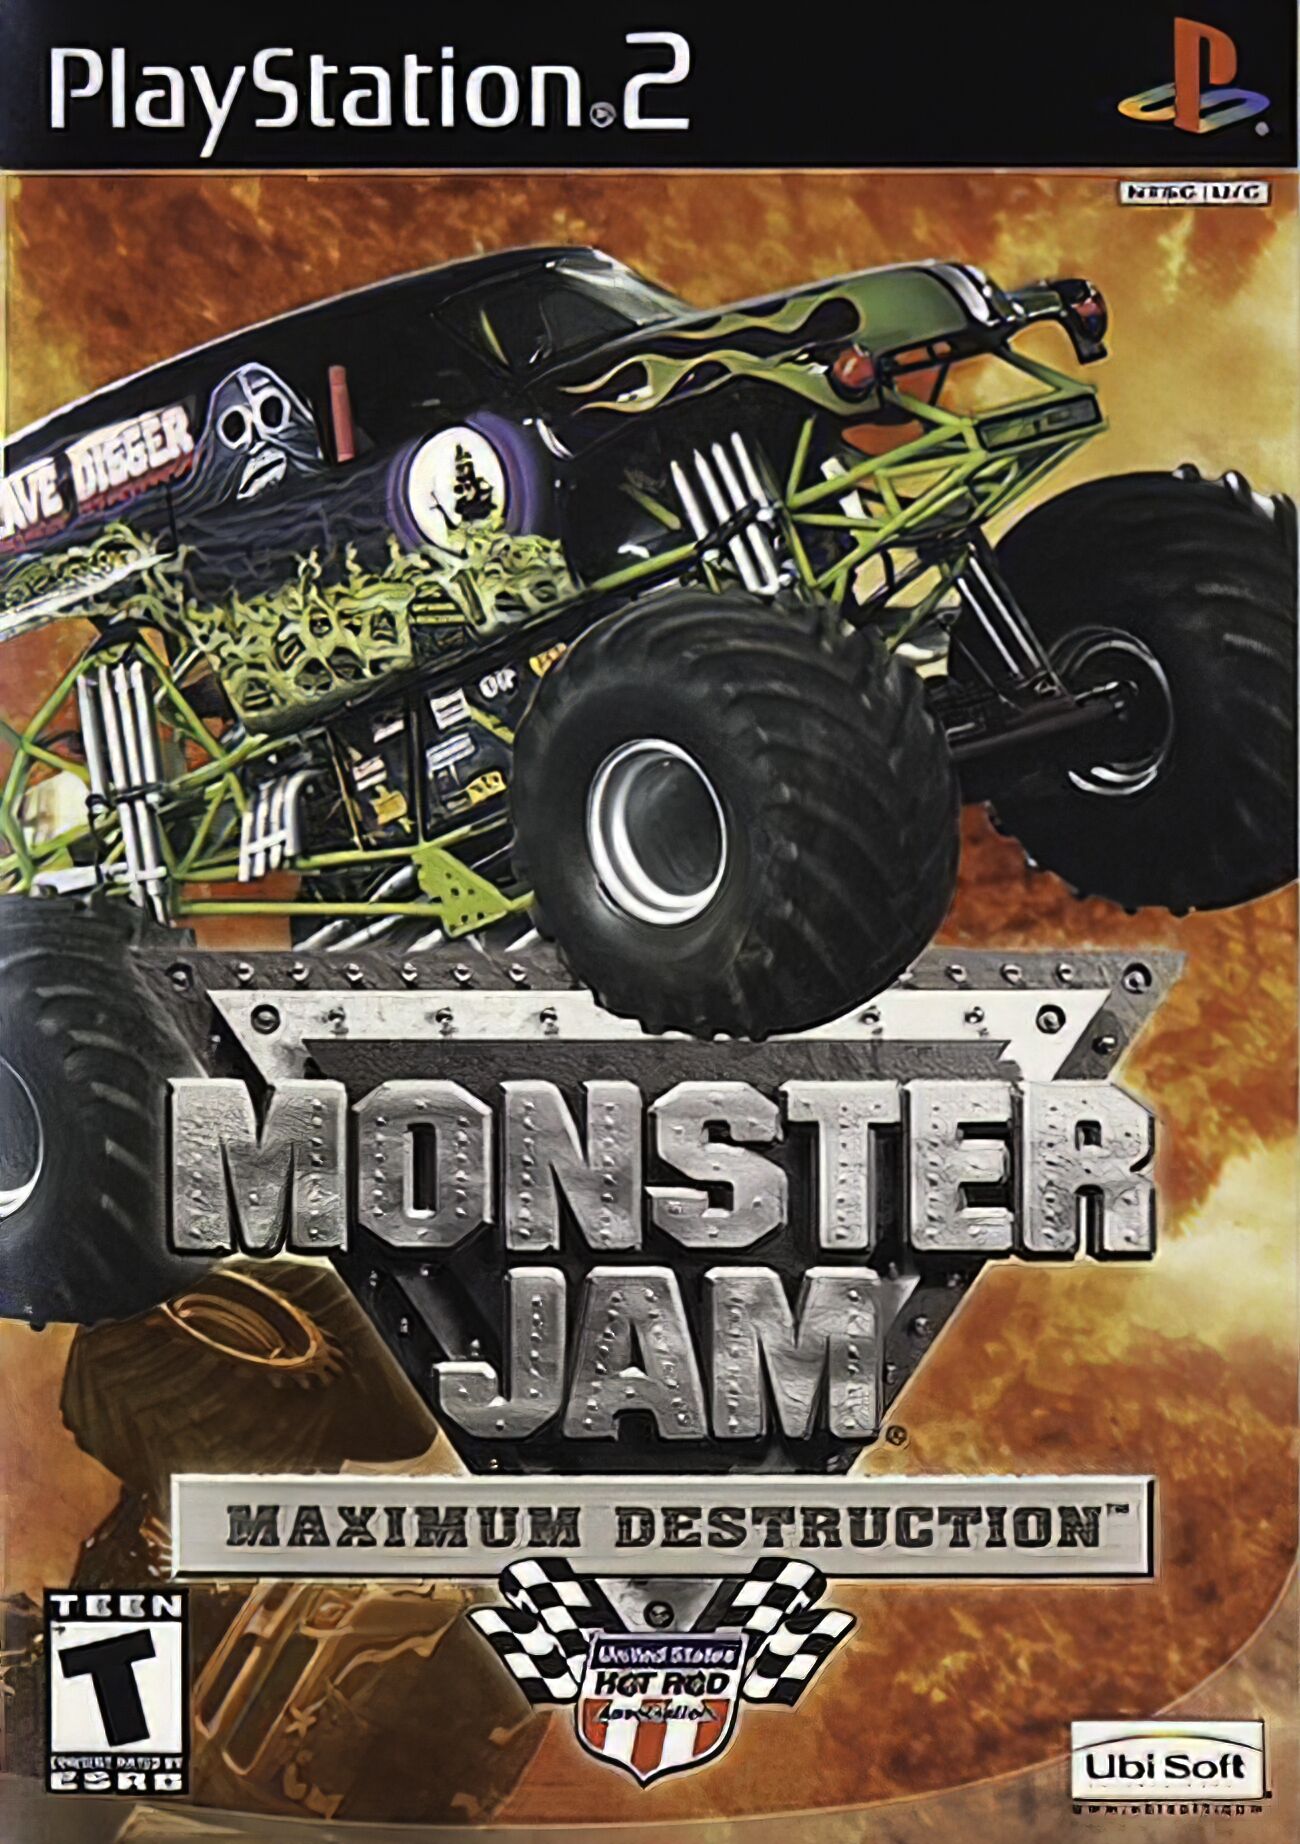 Monster Truck Destruction 2, Monster Trucks Wiki